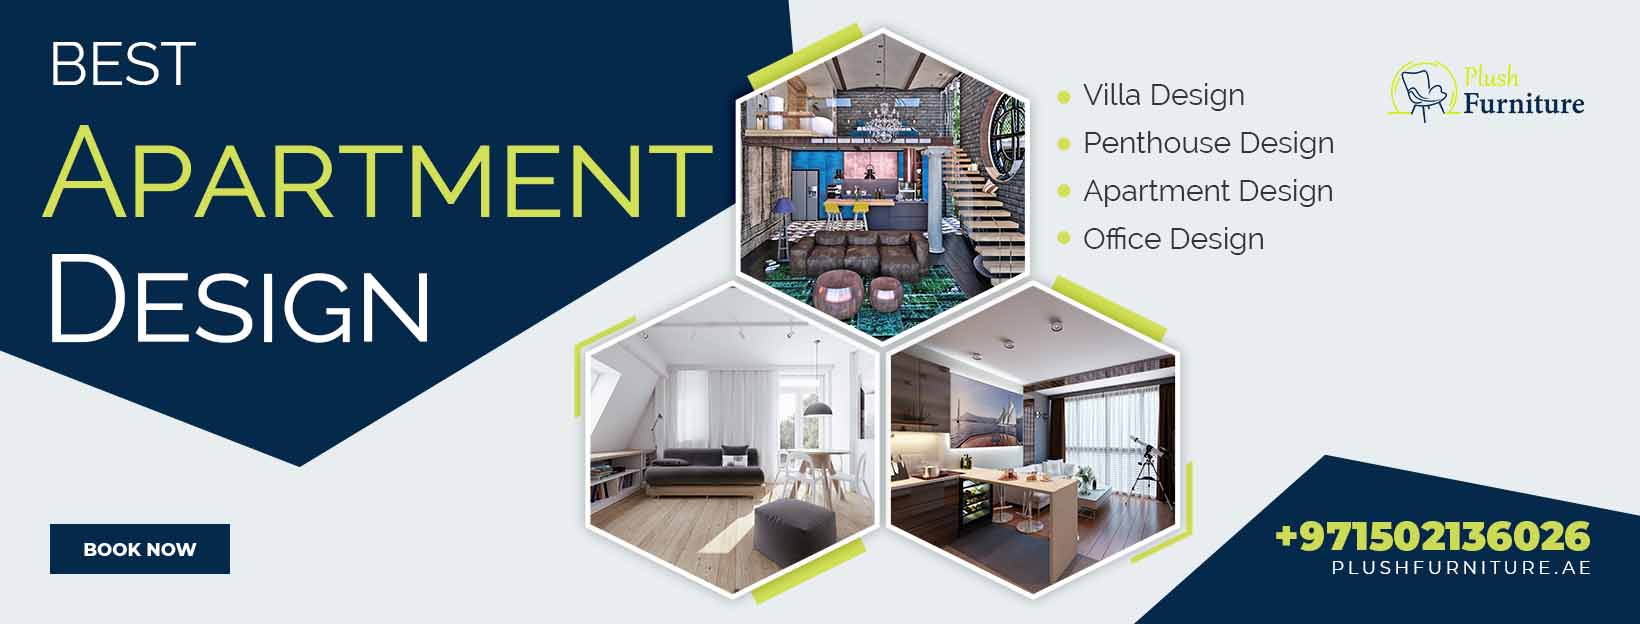 Best Apartment Design in Dubai